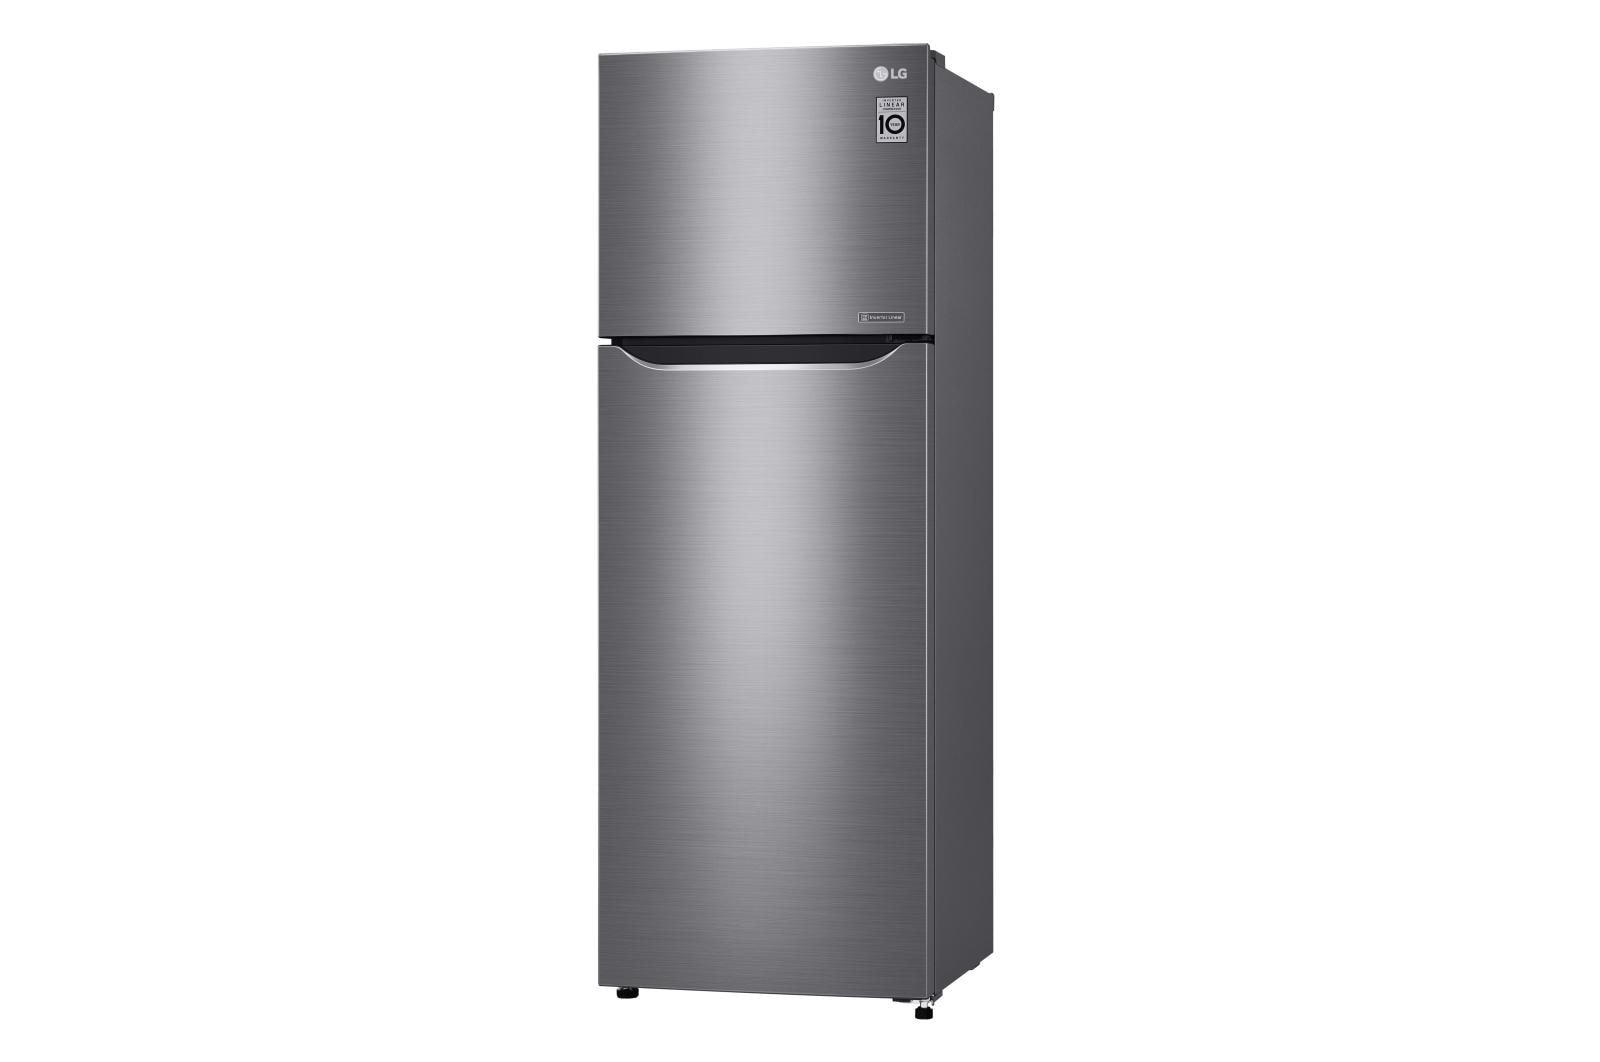 LG LTNC11131V: 11 cu. ft. Top Freezer Refrigerator | LG USA